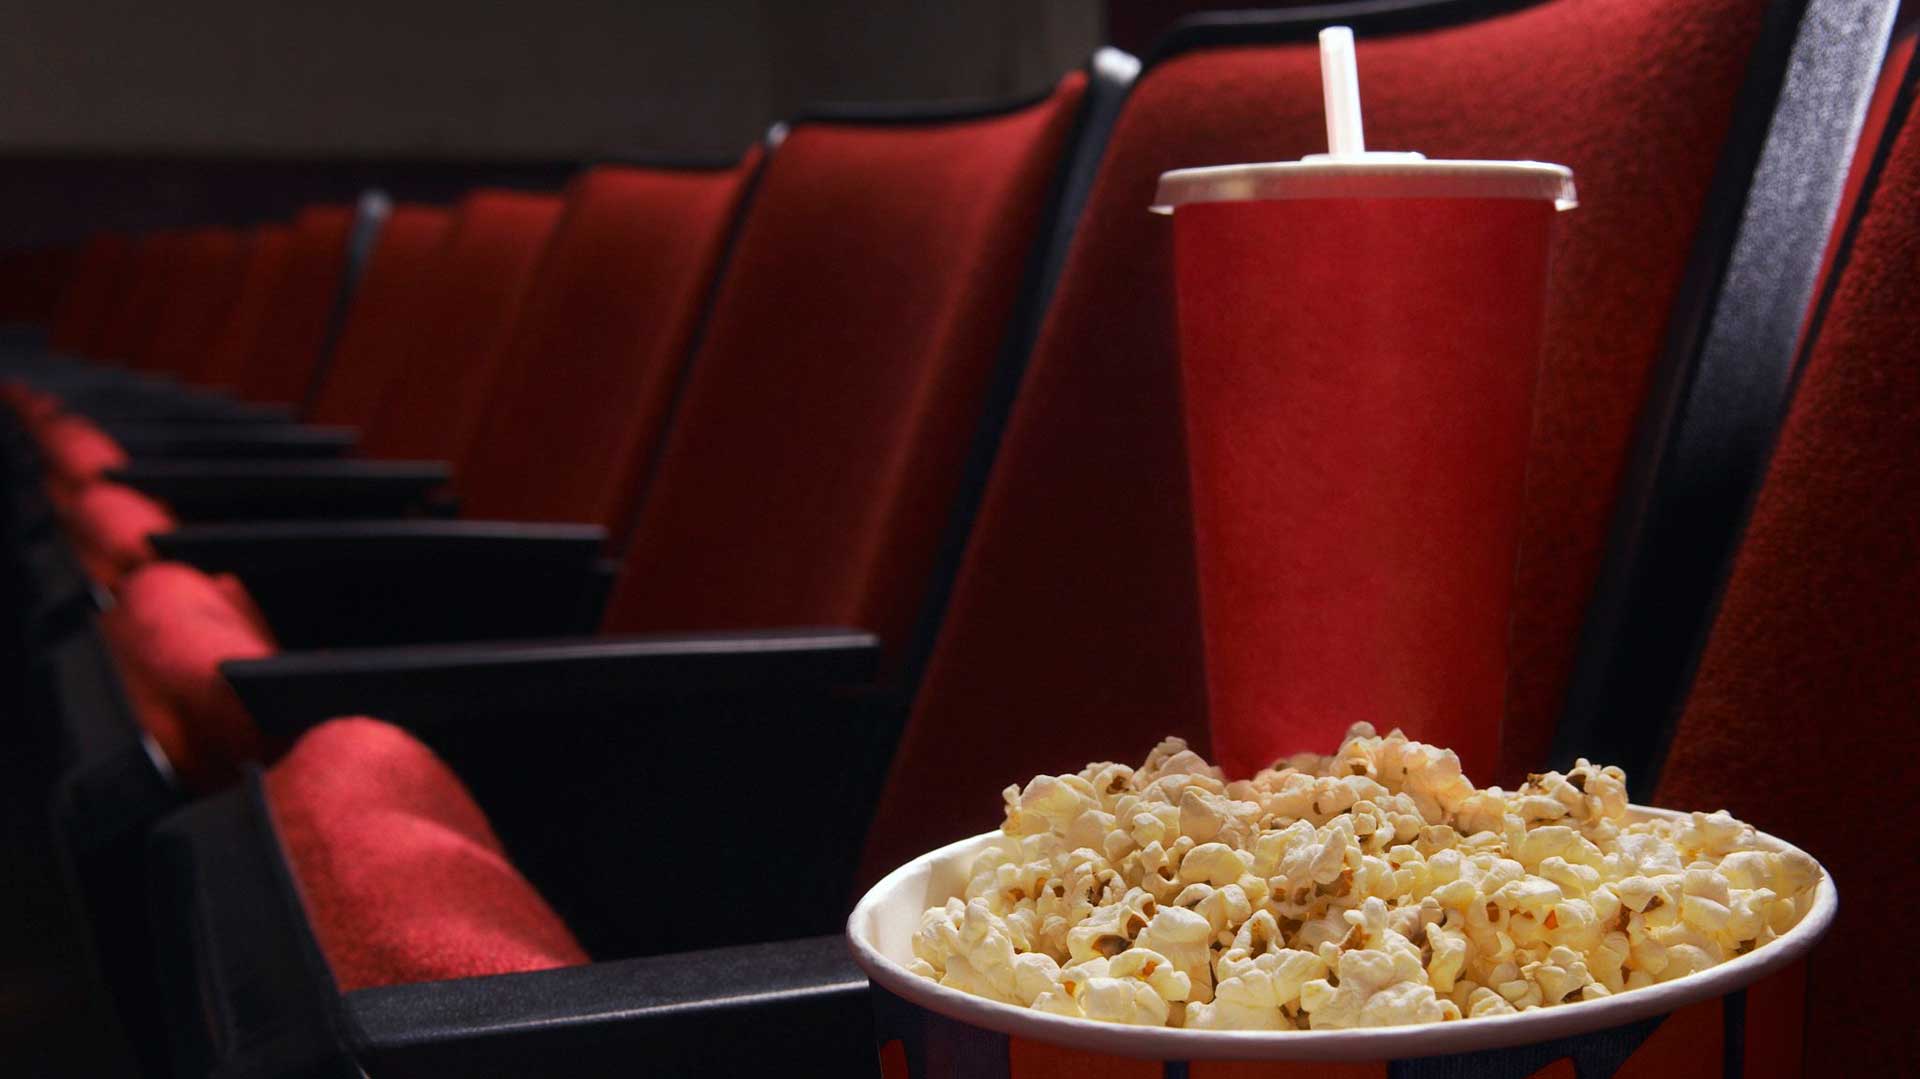 Consumo de alimentos y bebidas queda prohibido en salas de cine